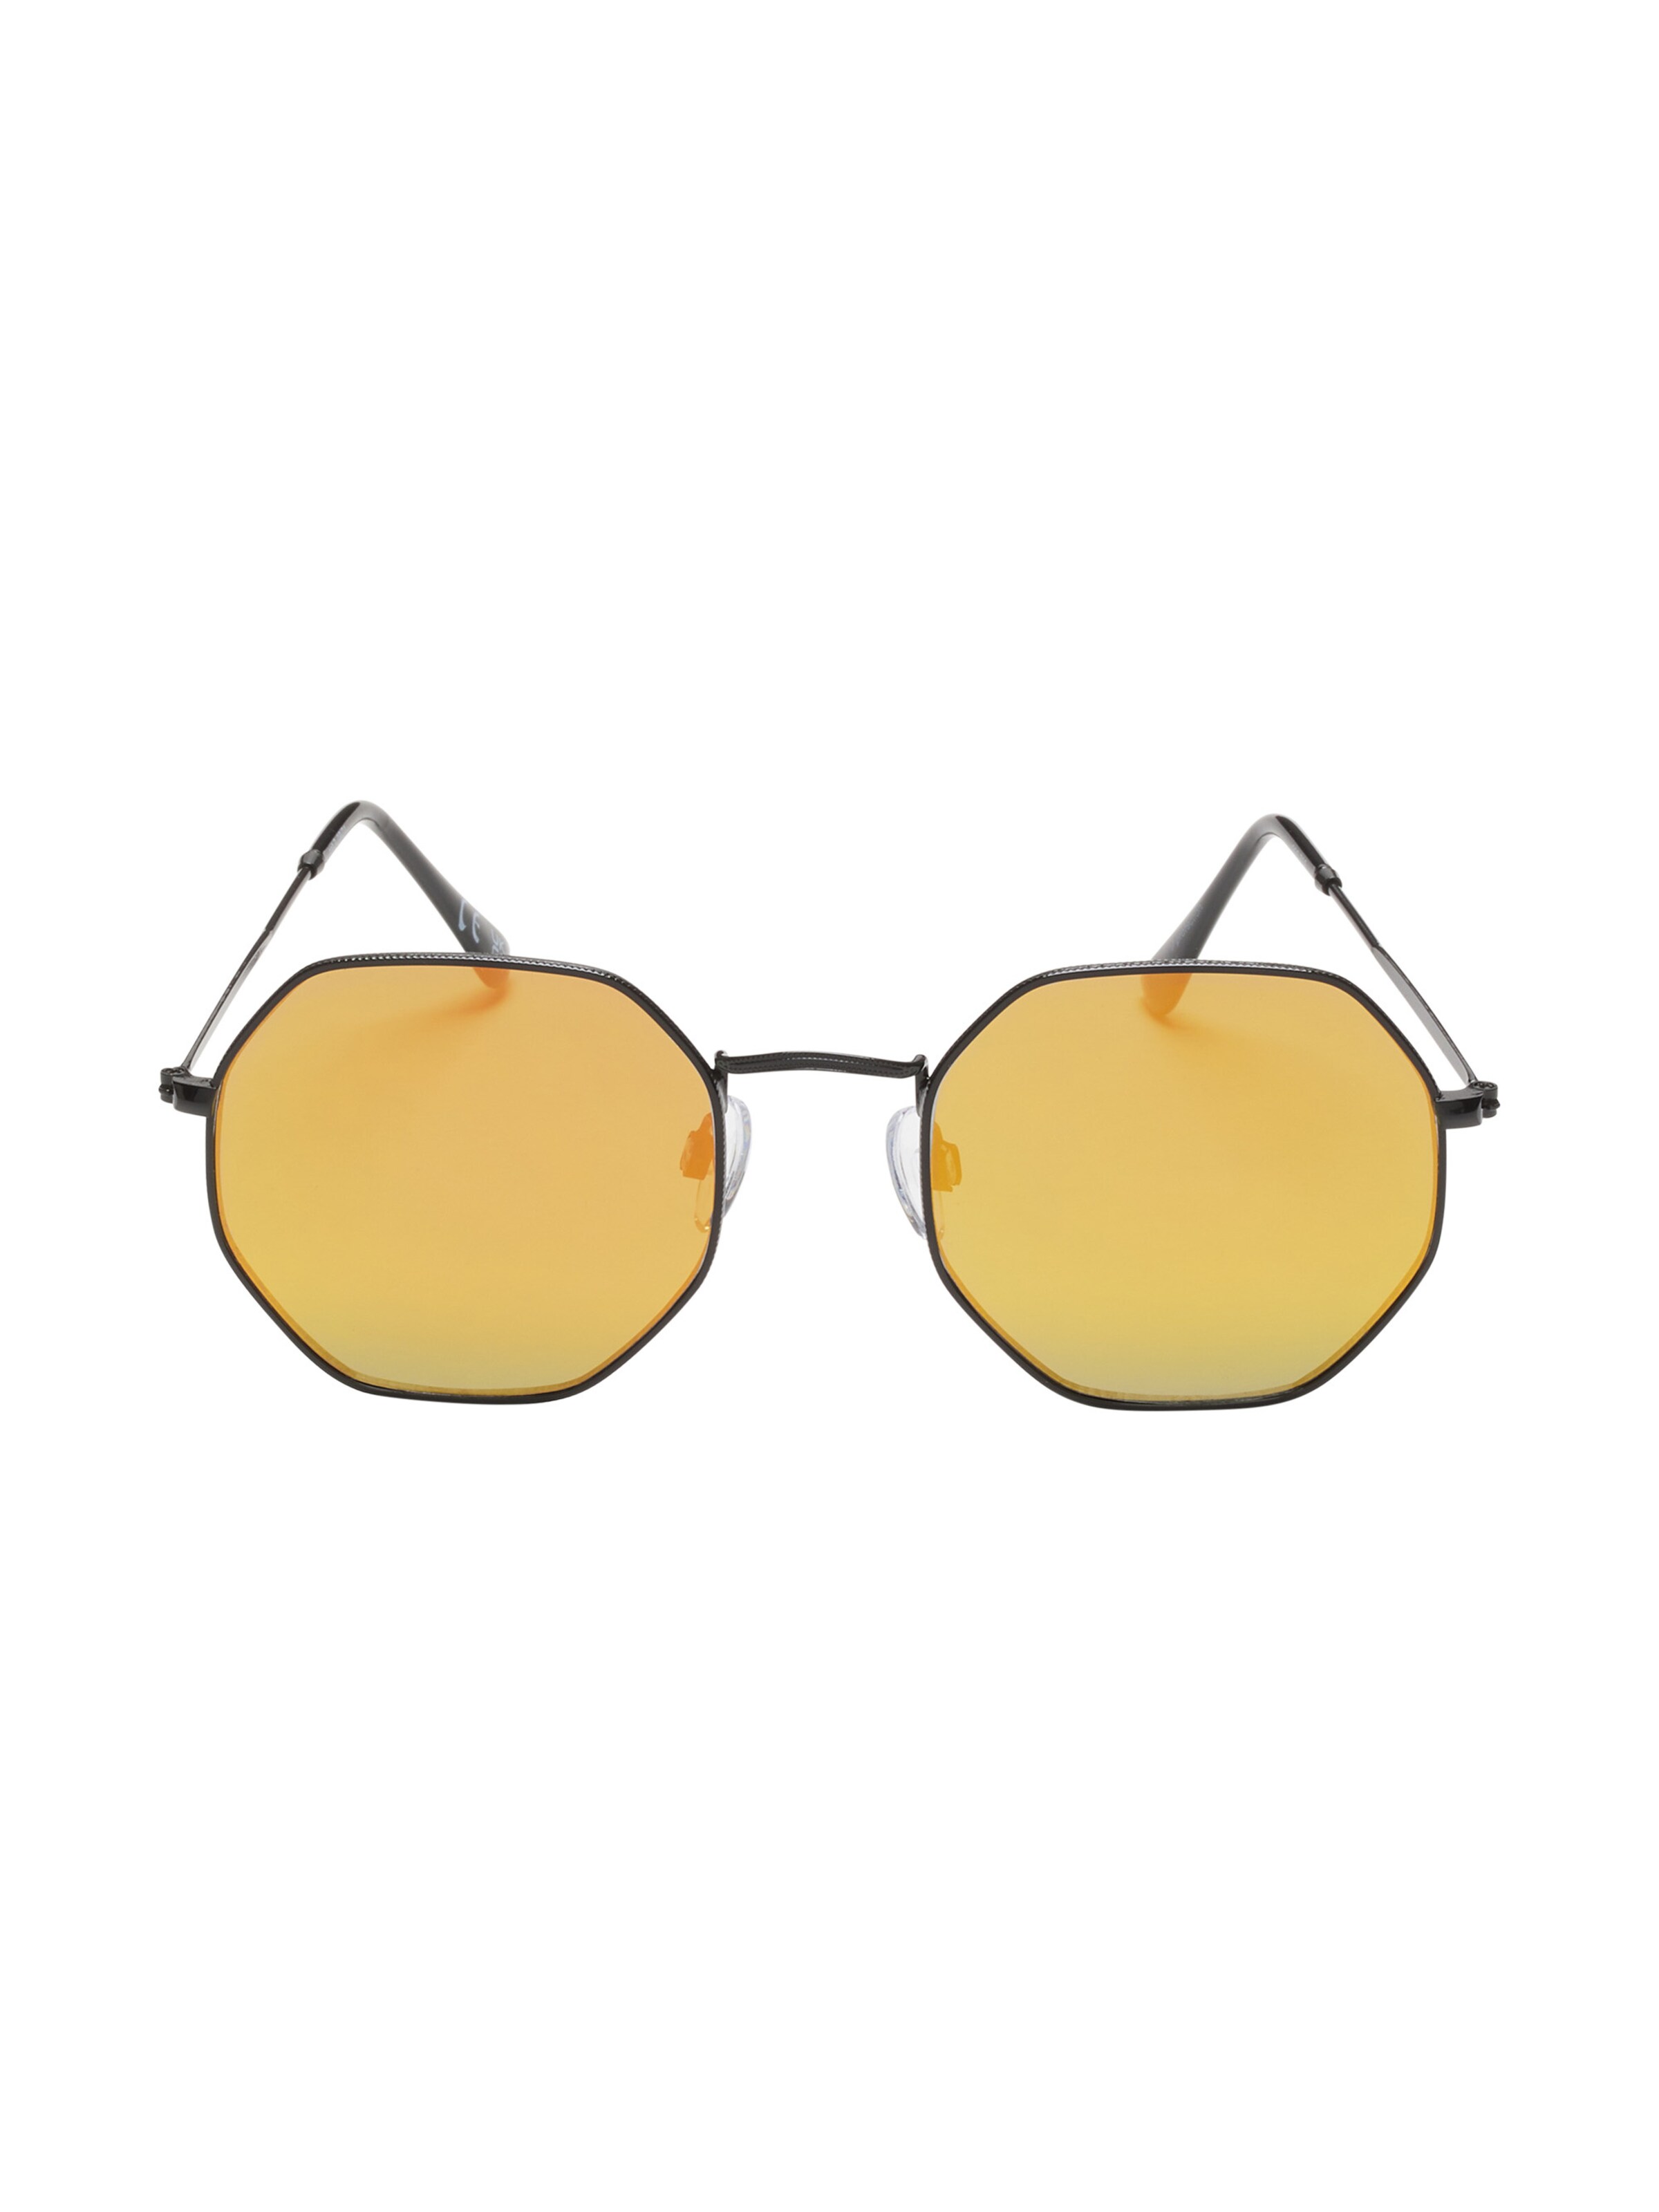 Frauen Sonnenbrillen Six Sonnenbrille in Gelb - LM38230